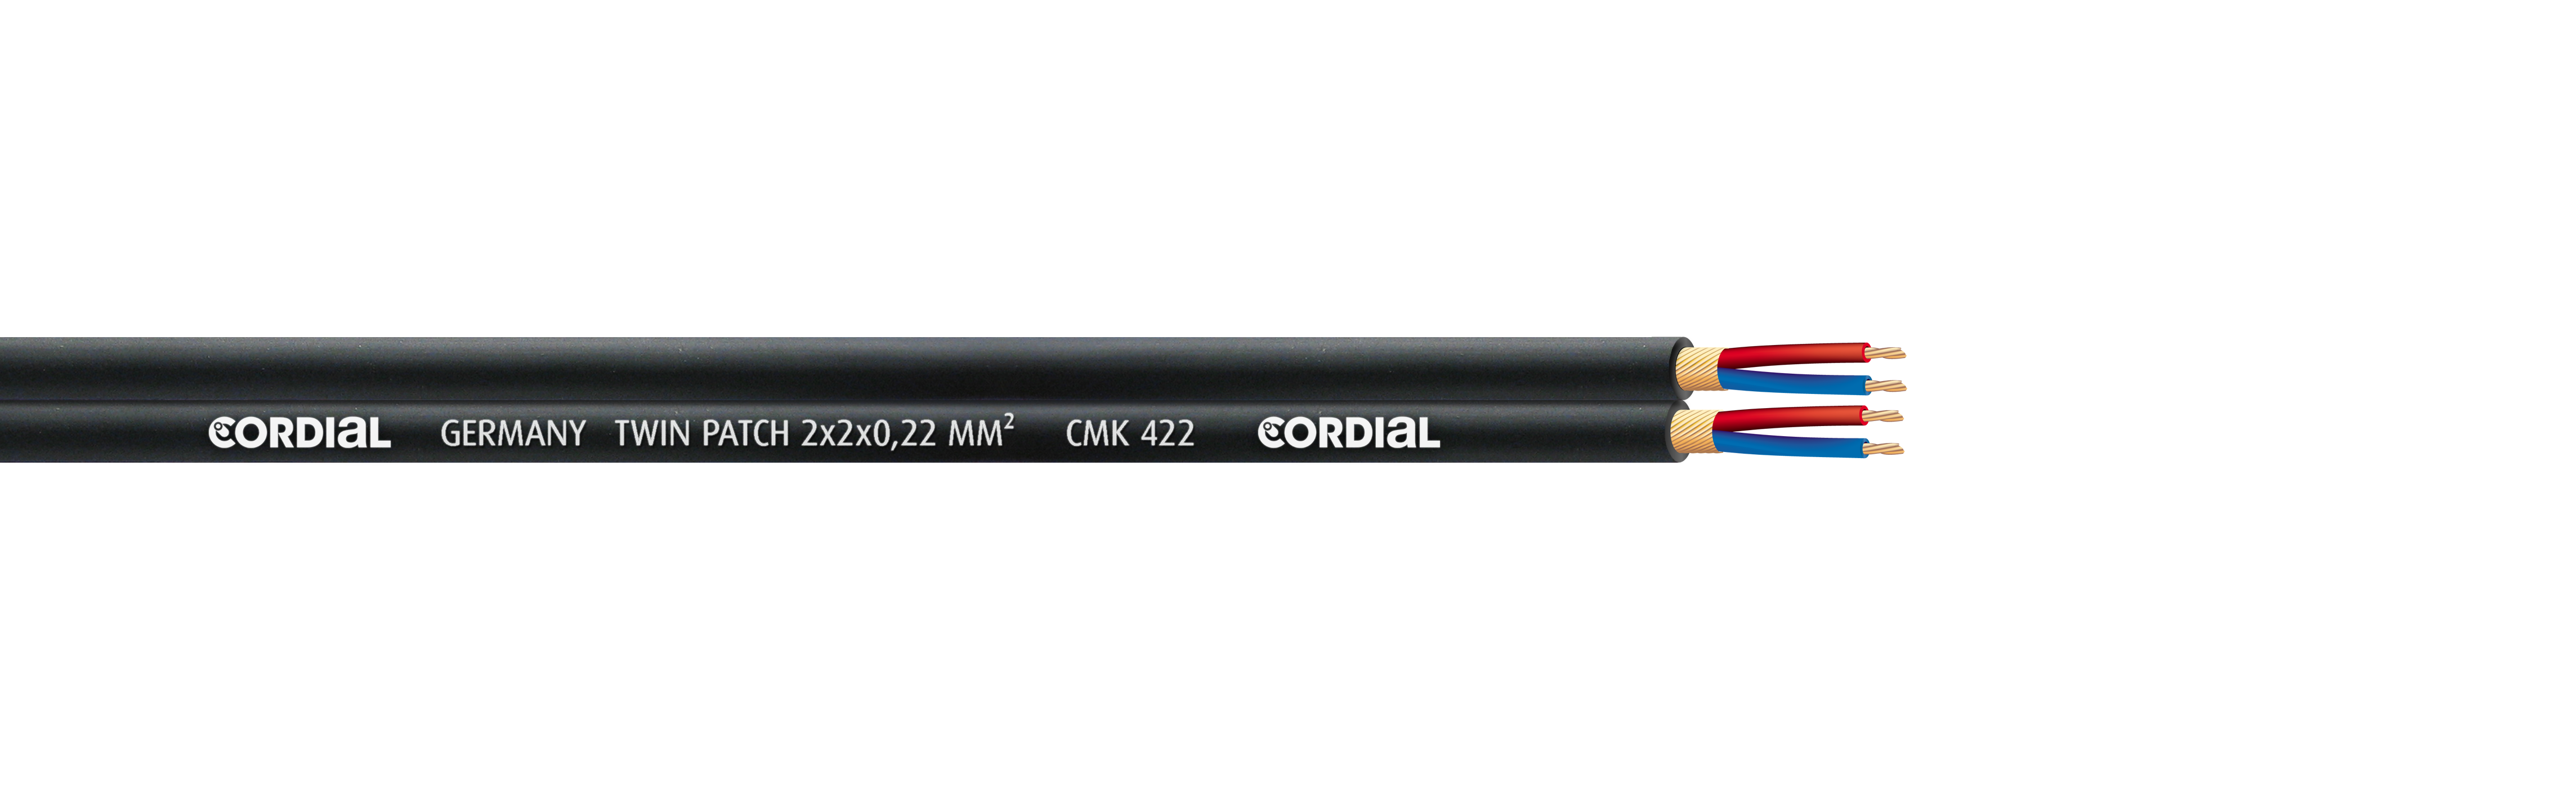 CMK 422 Mikrofonkabel CORDIAL Kabel